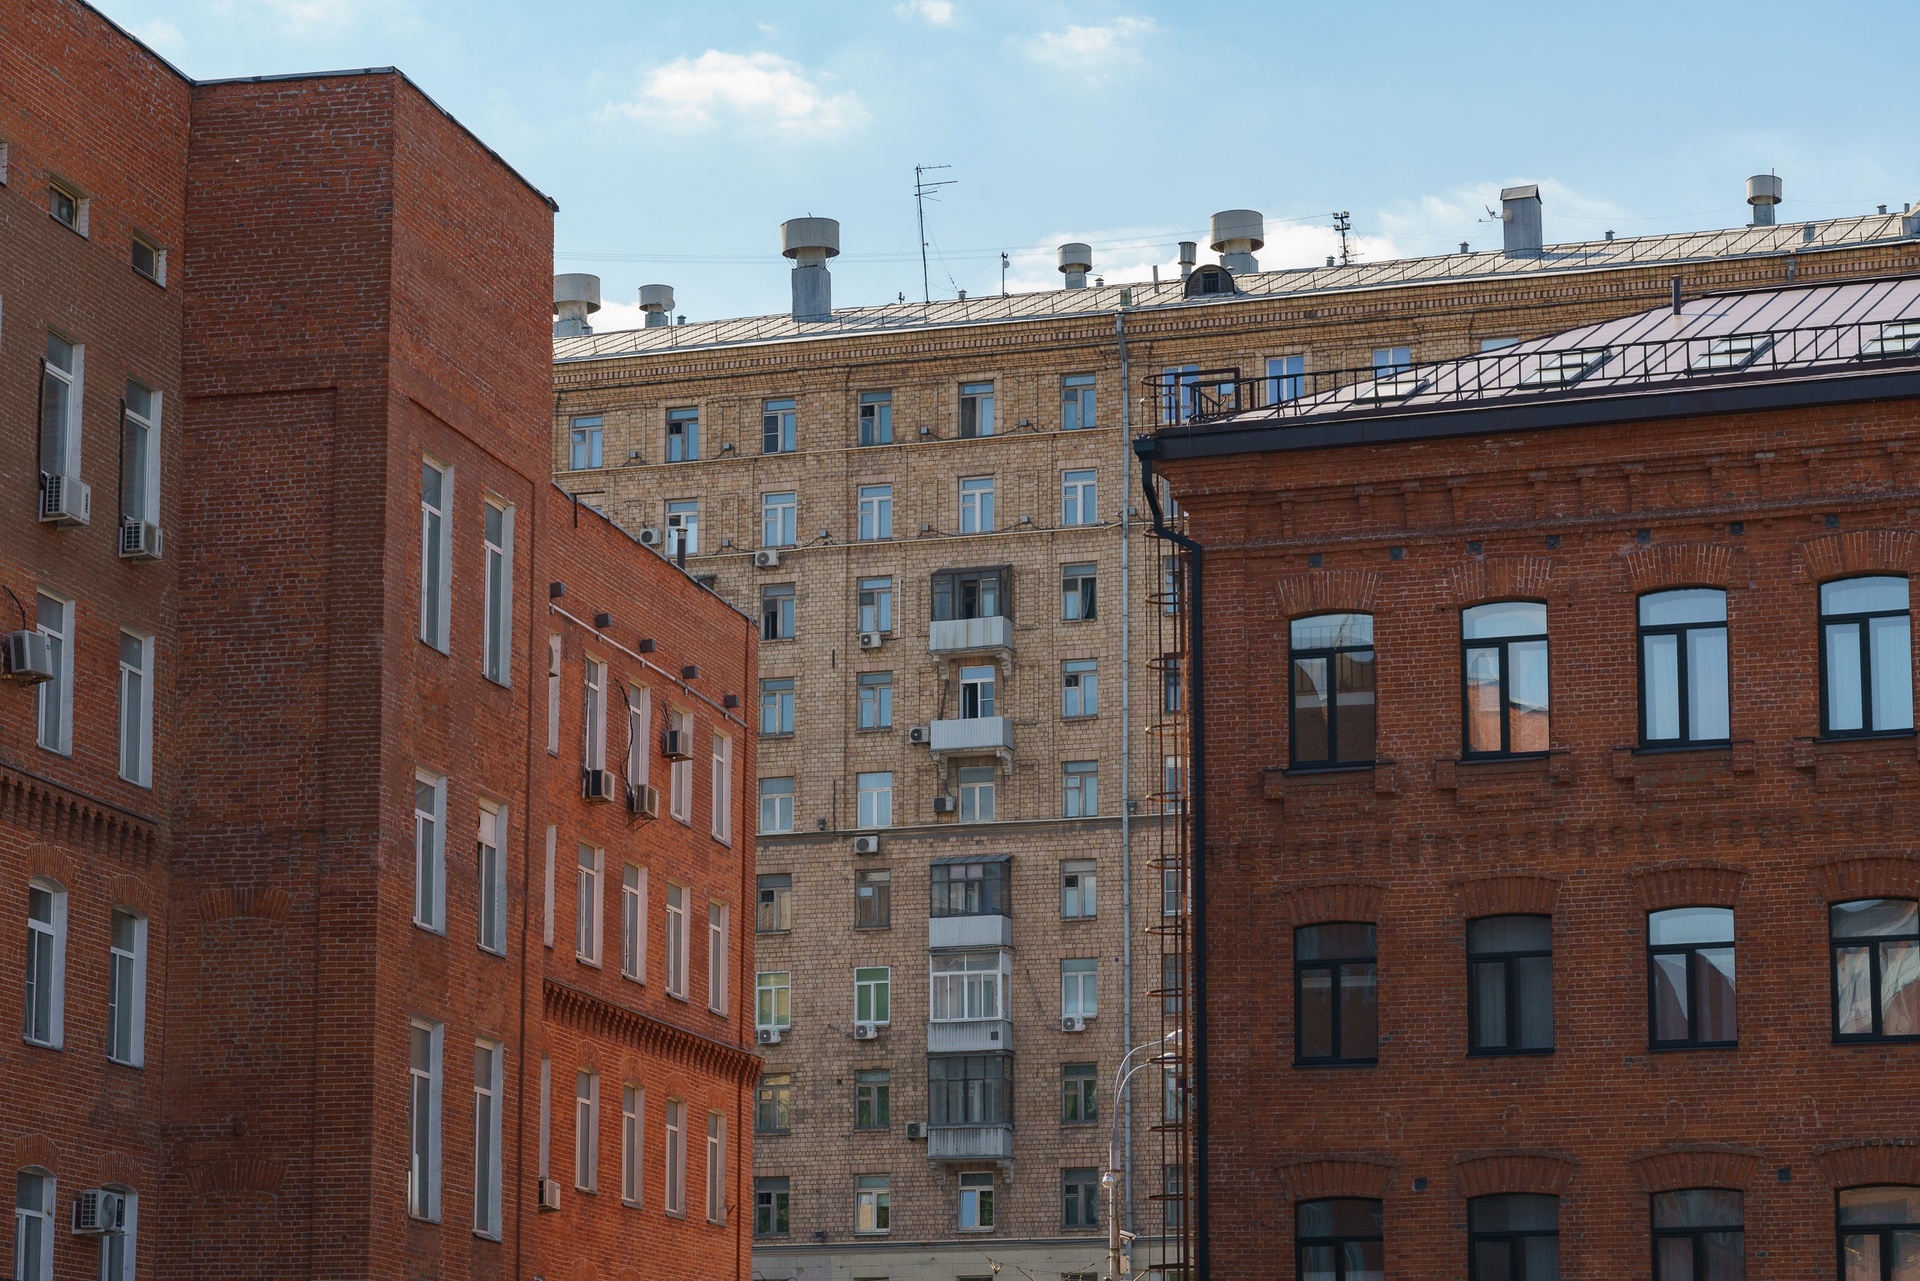 «Метриум»: для покупки квартиры в Москве нужно копить 7 лет и 2 месяца